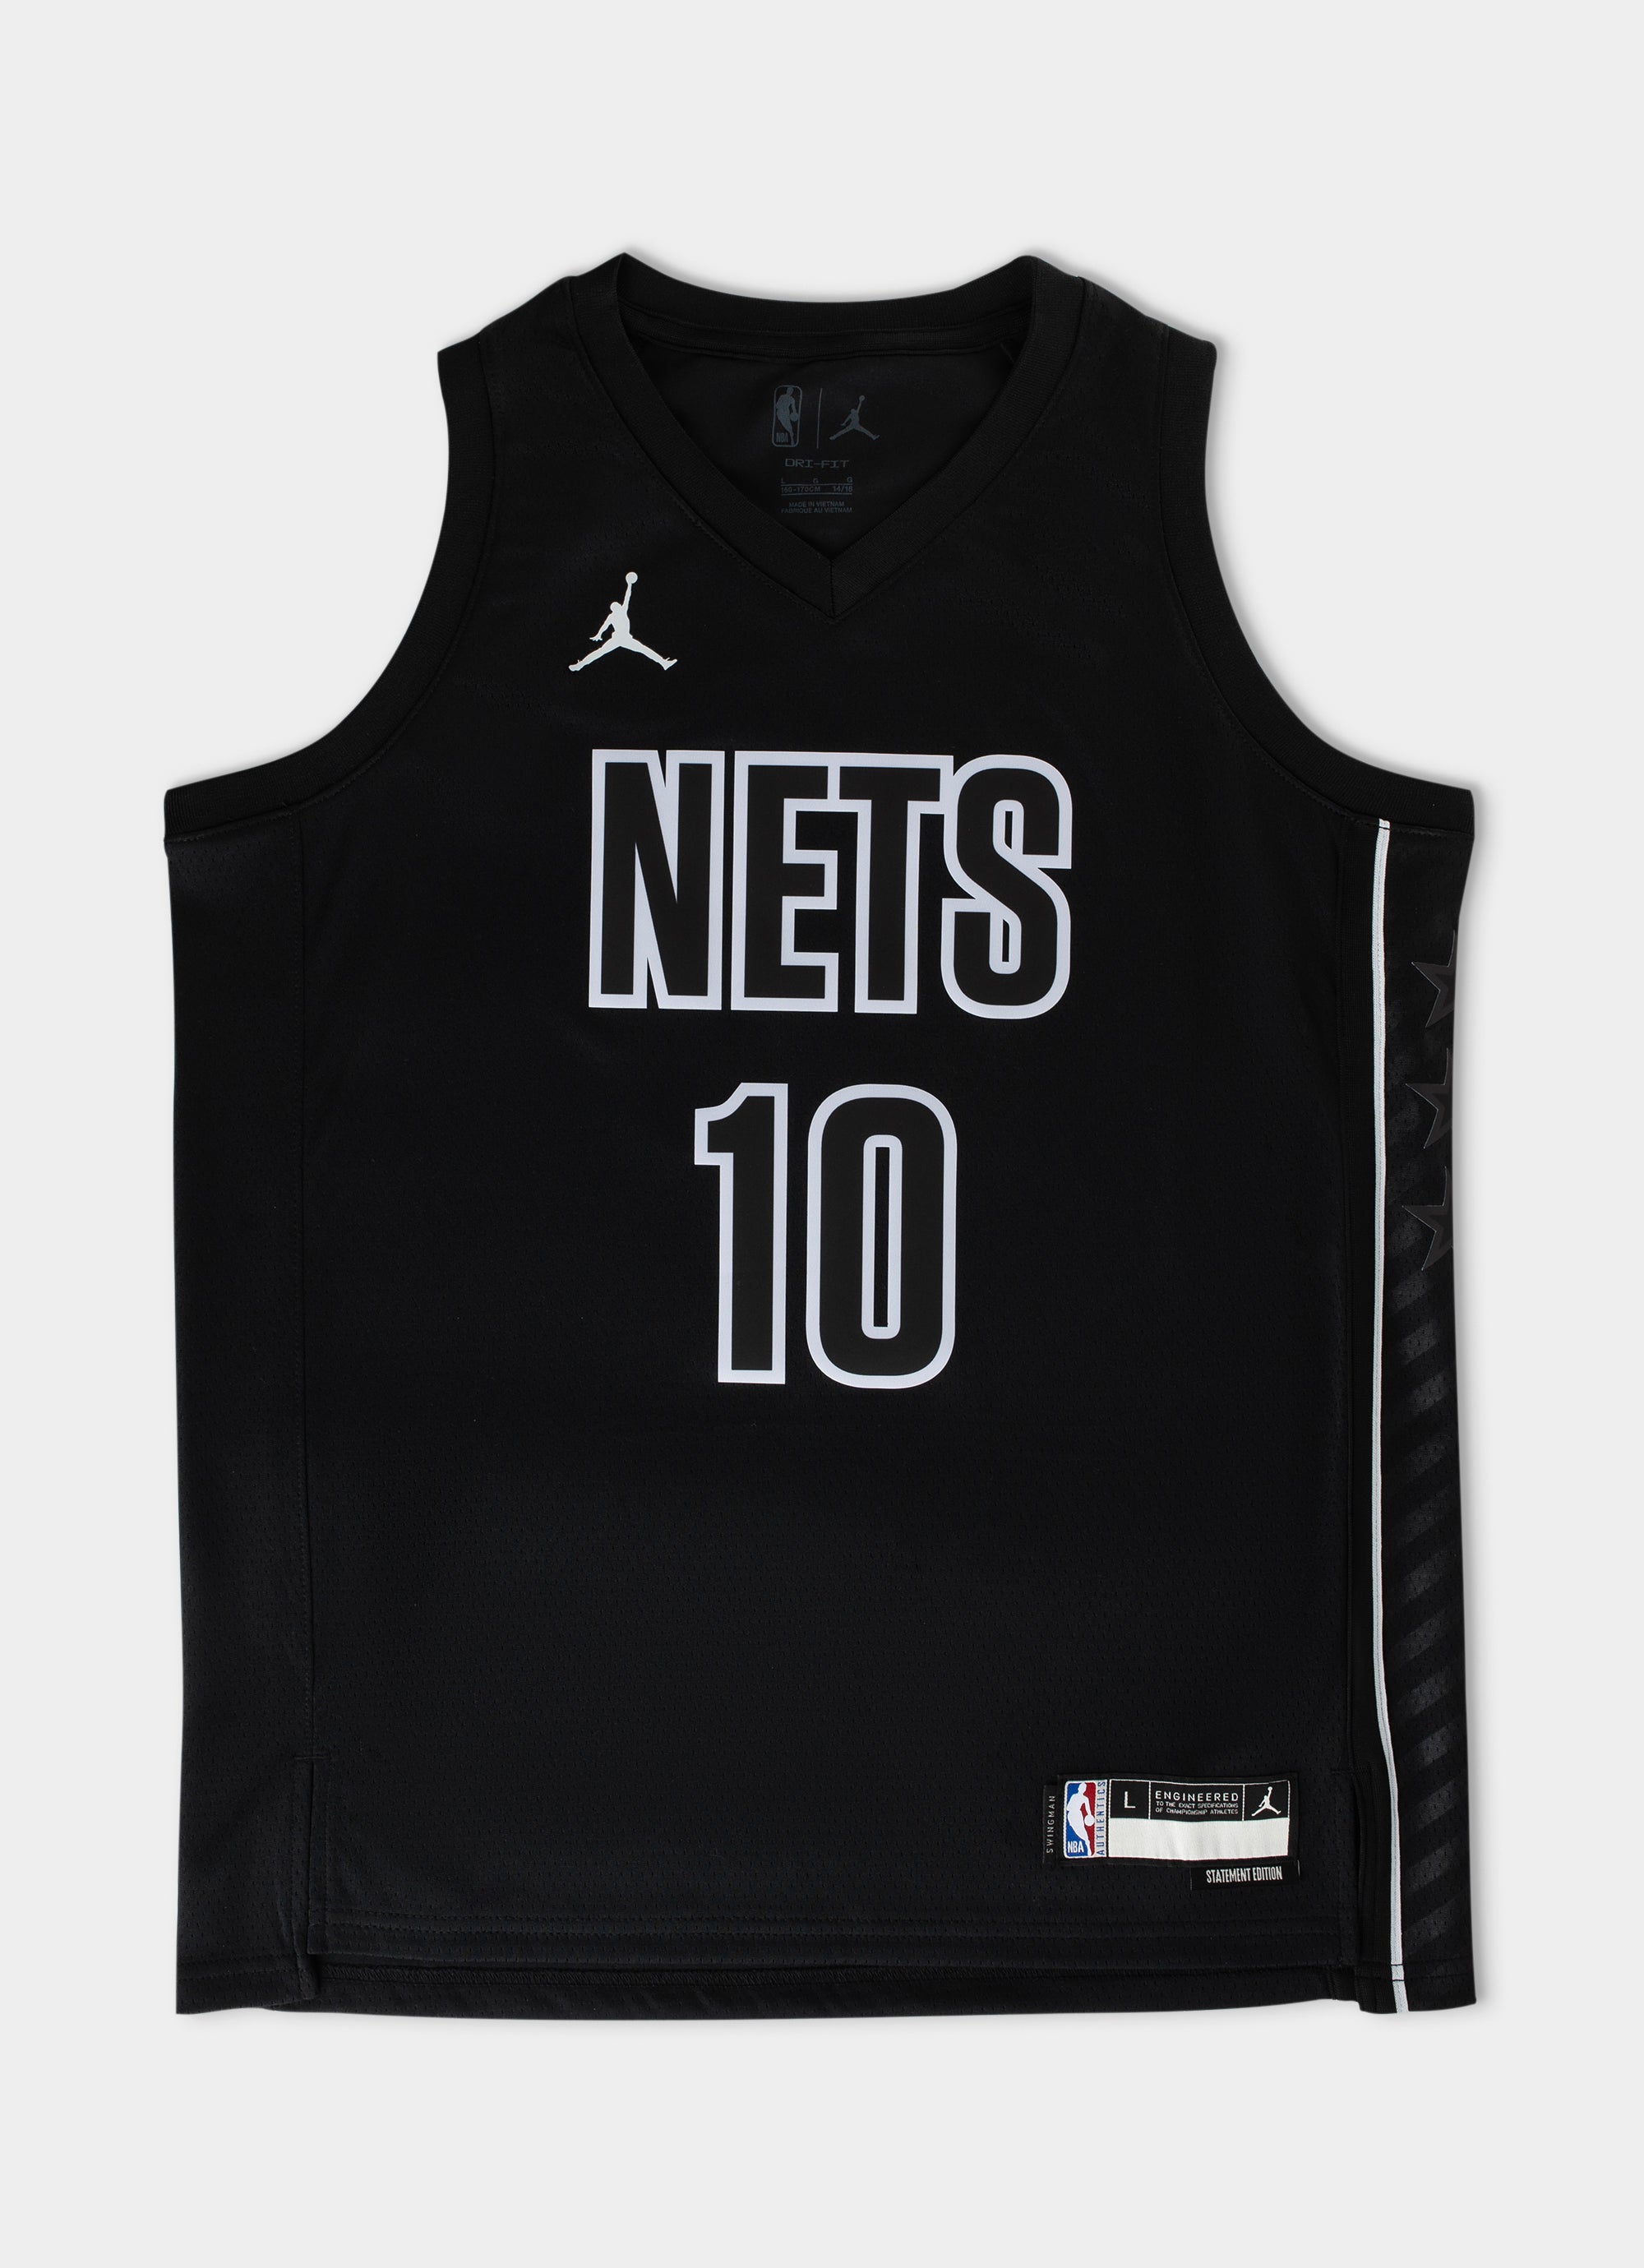 Brooklyn Nets Jerseys, Swingman Jersey, Nets City Edition Jerseys